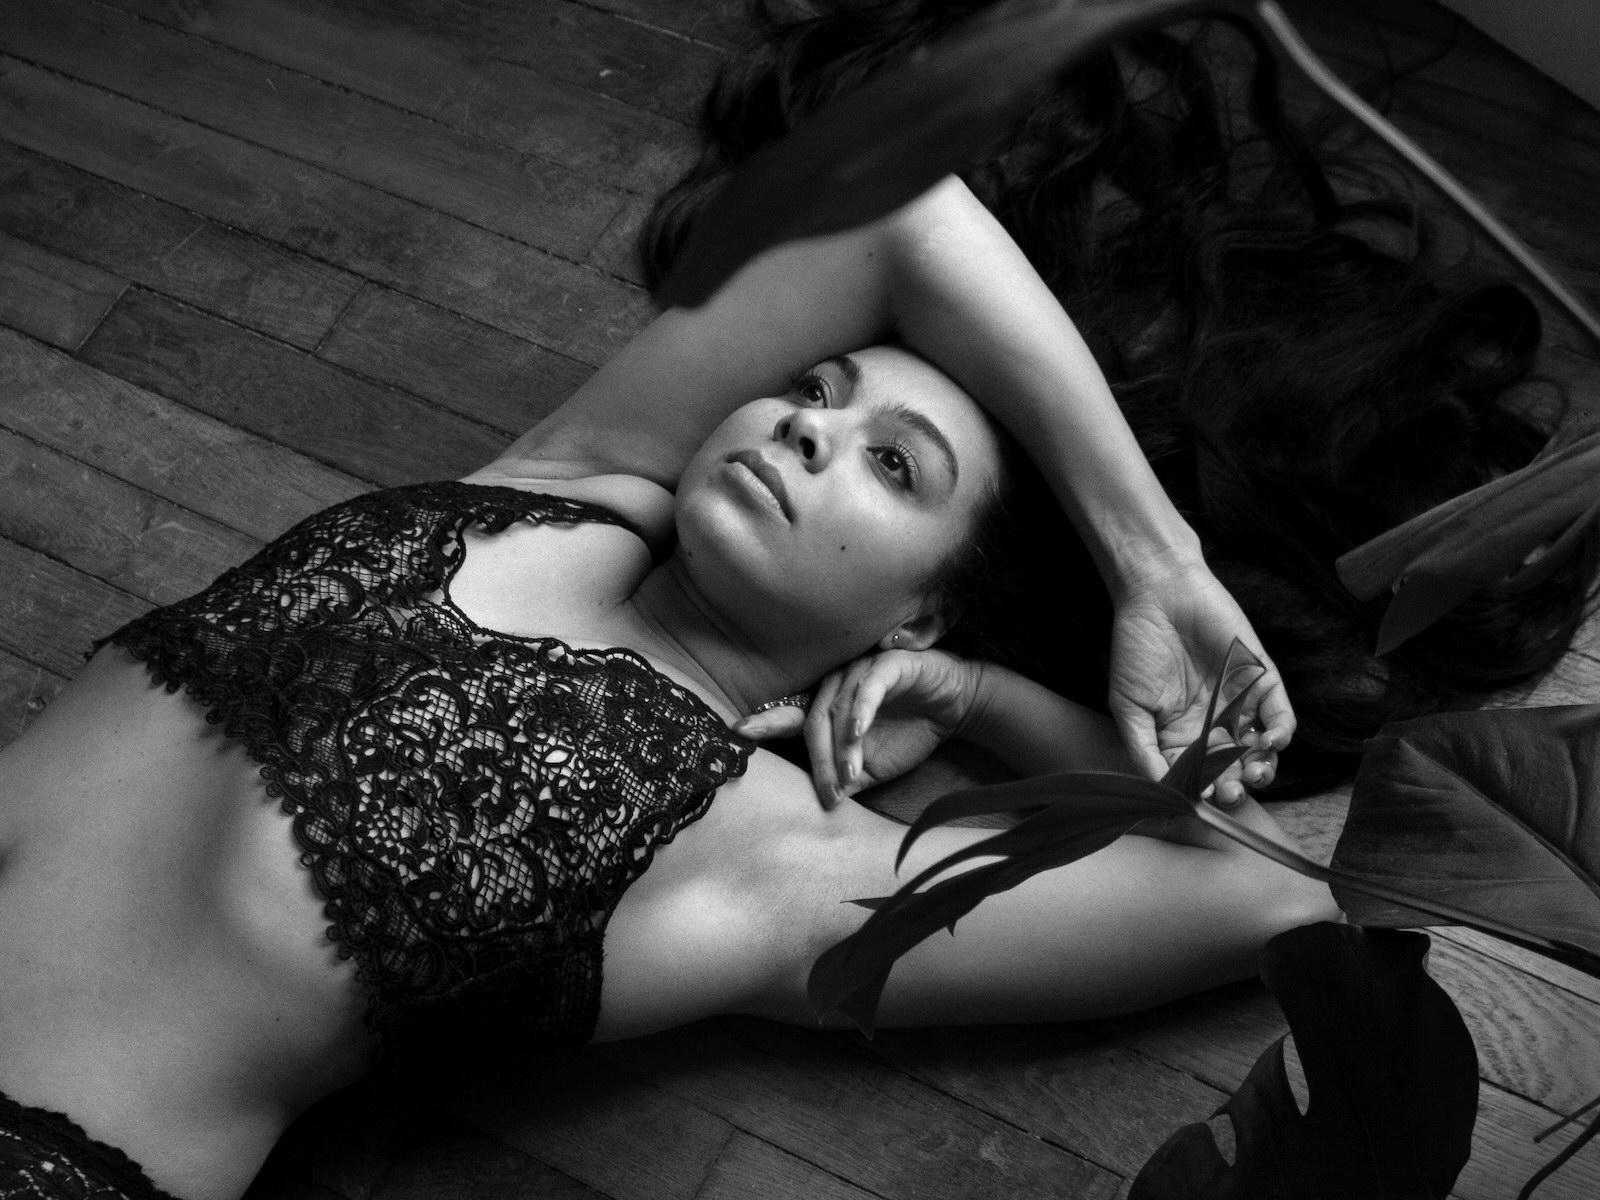 Une modèle pose dans une lingerie en noir et blanc.